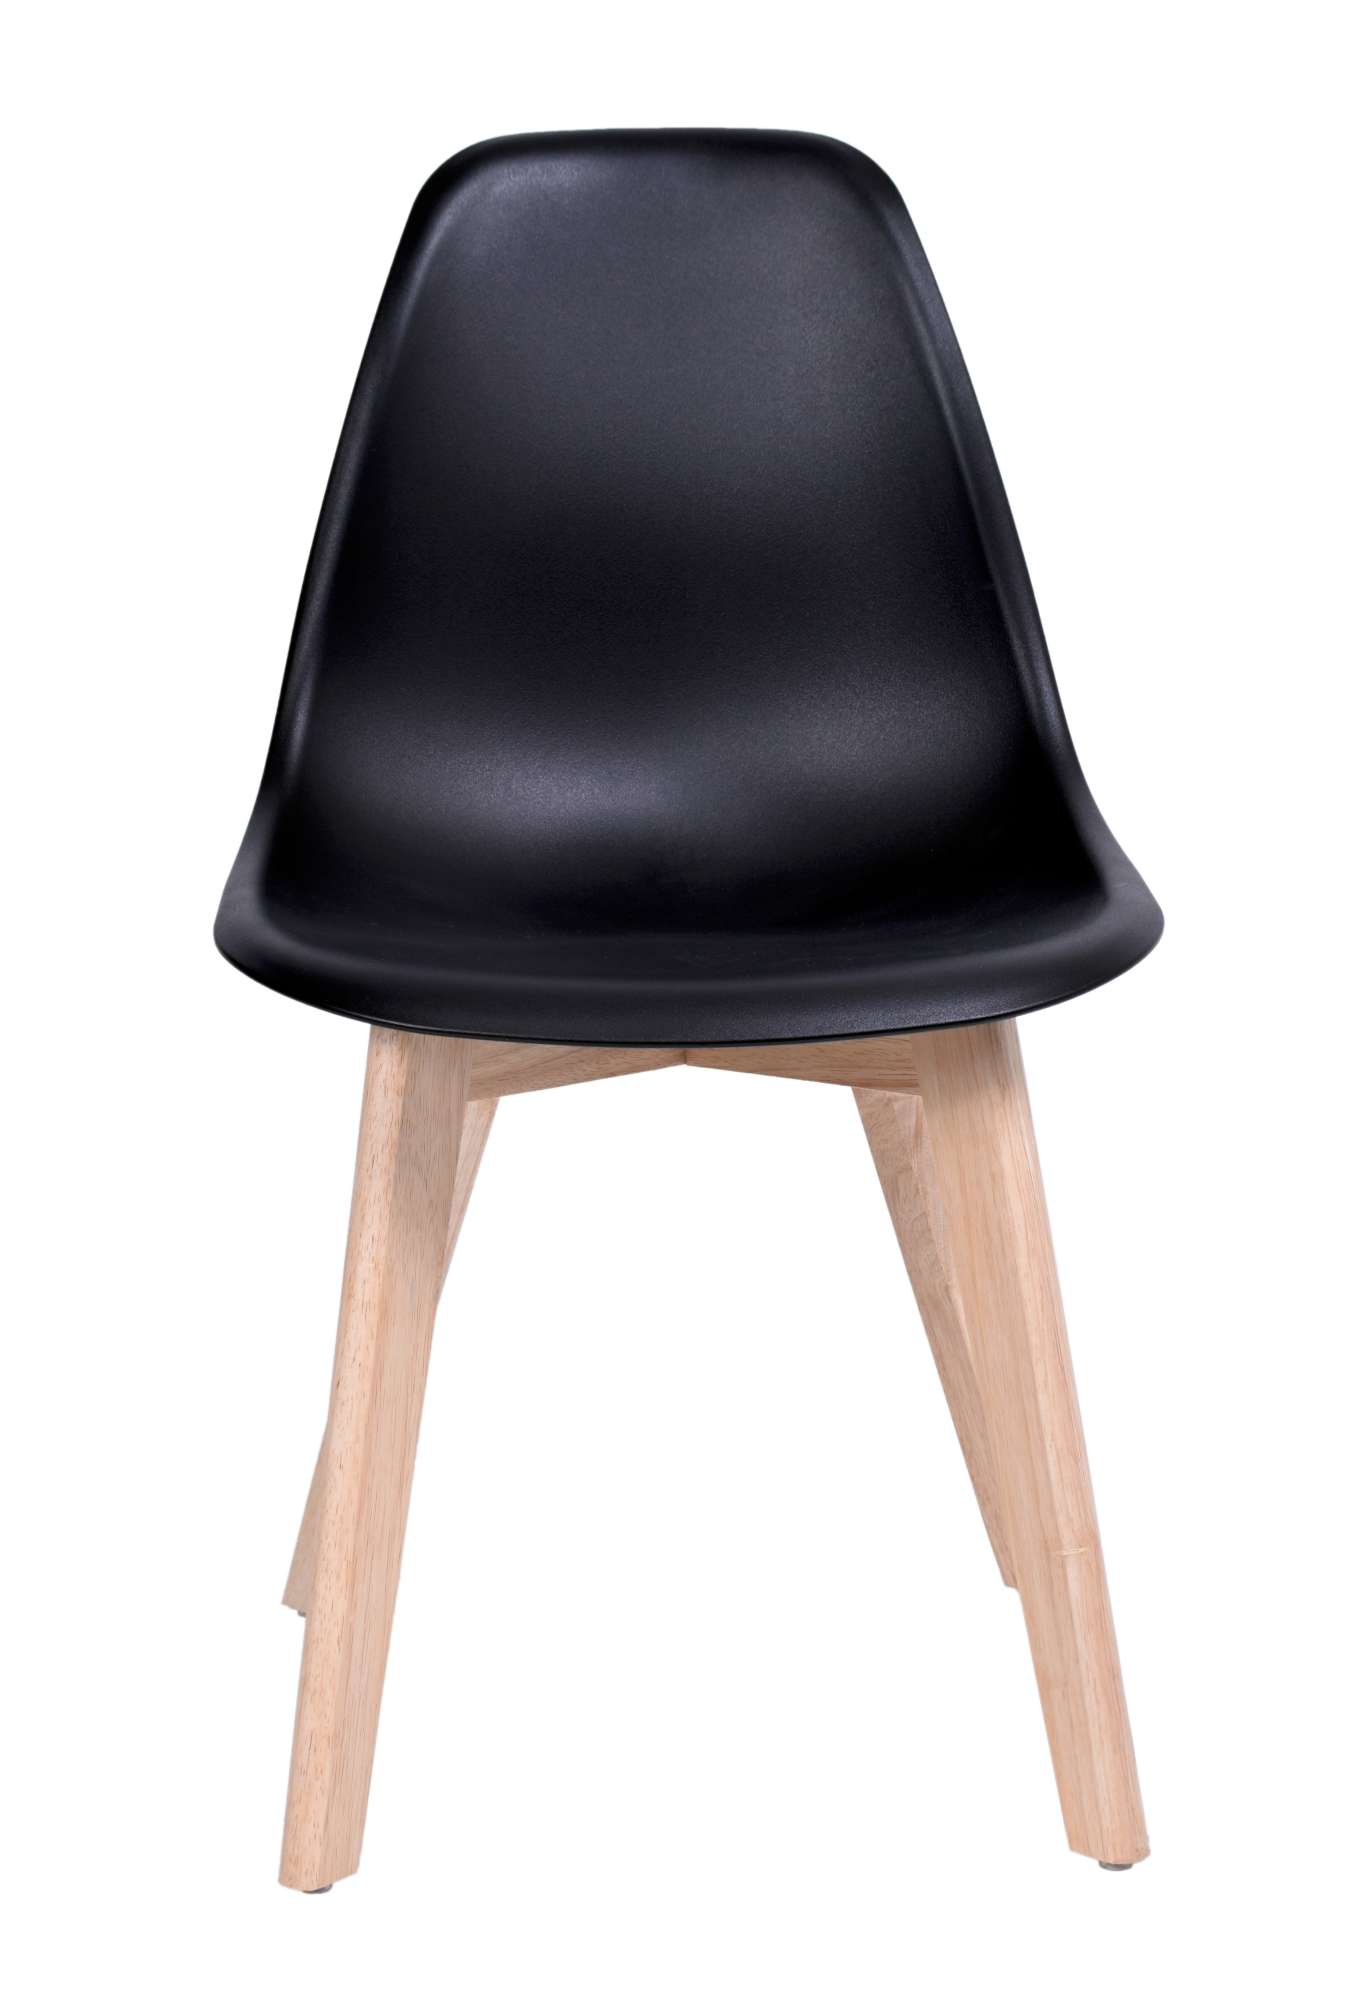 krzeslo nowoczesne asti